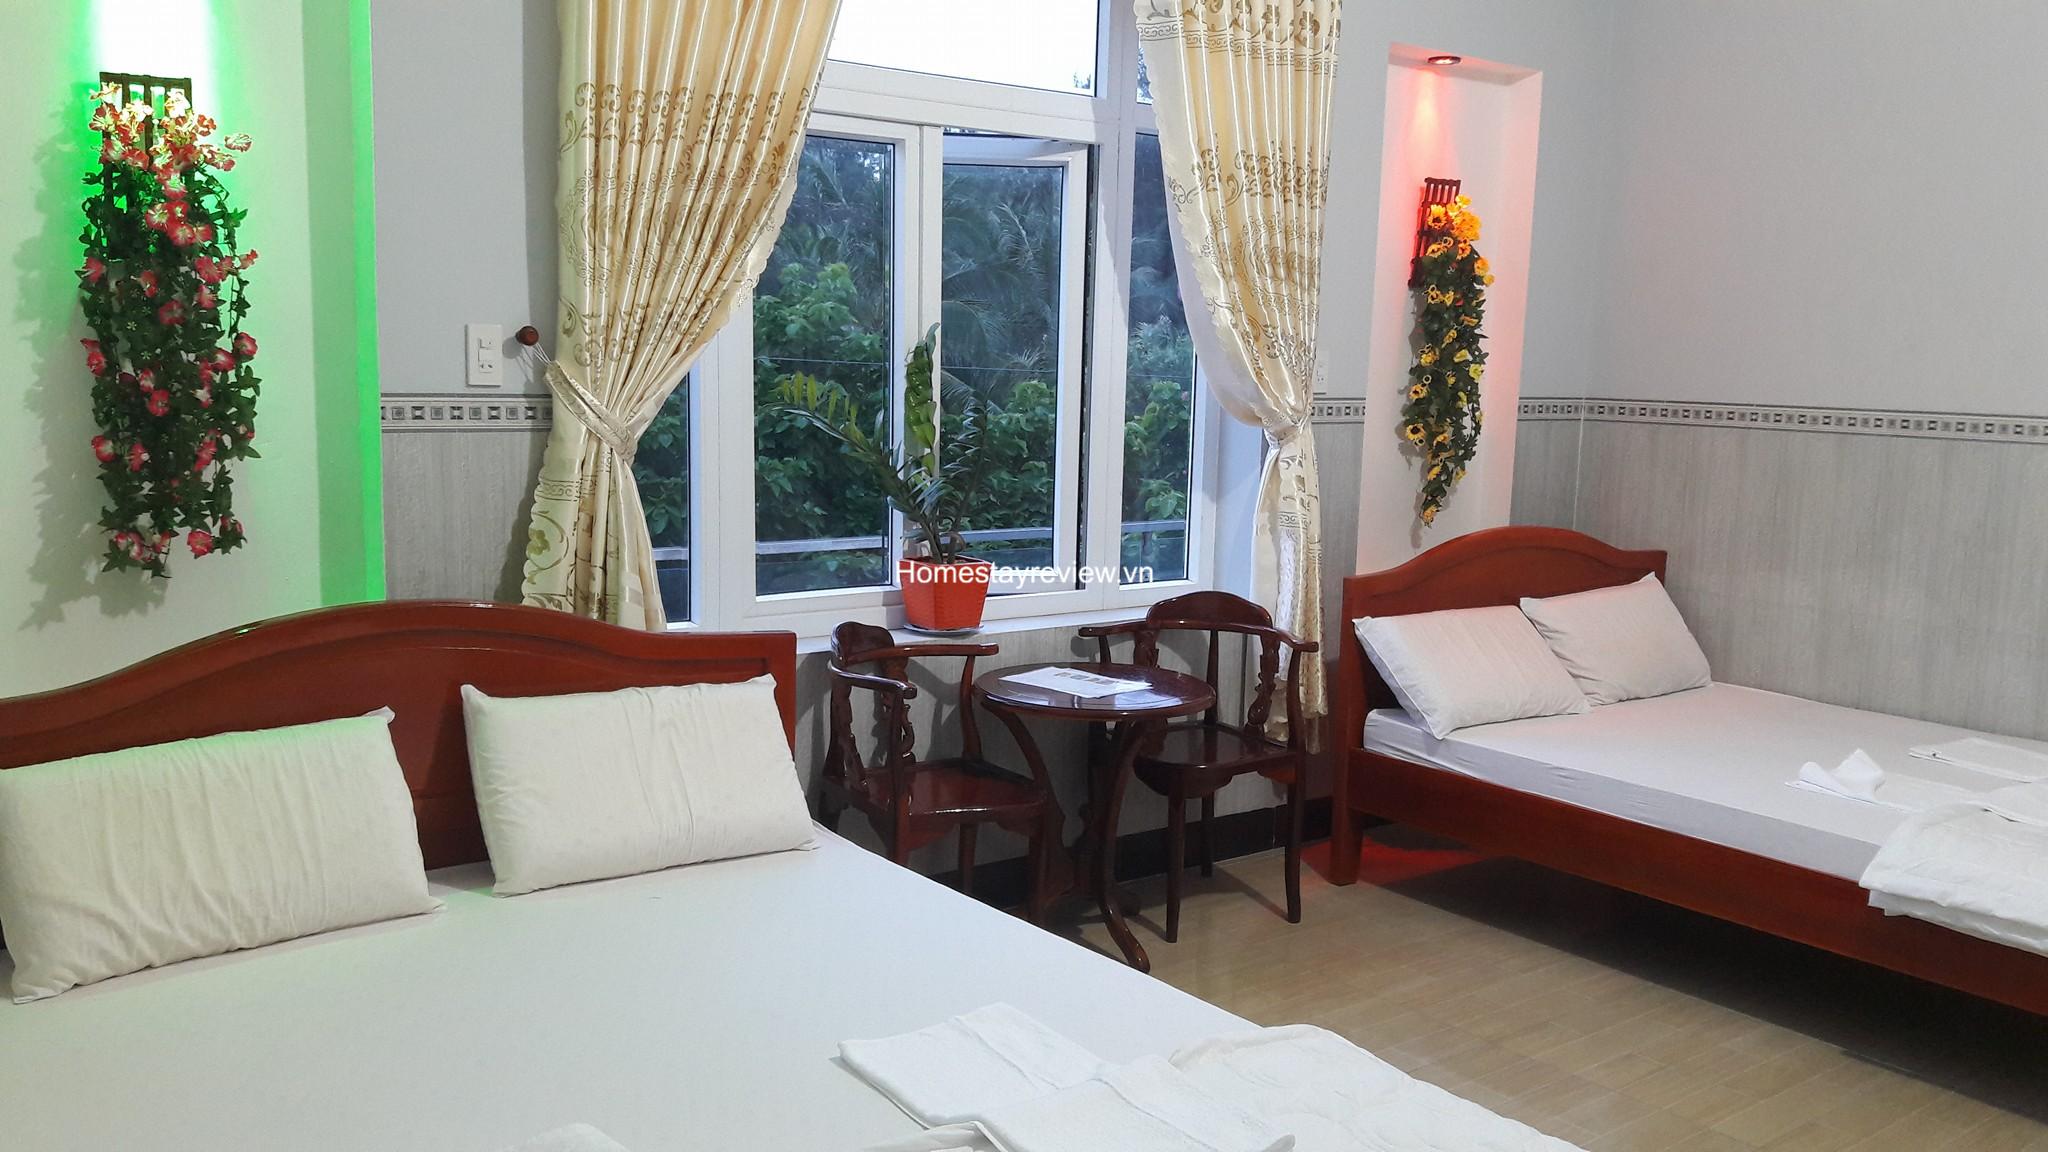 Top 20 Khách sạn nhà nghỉ homestay đảo Phú Quý giá rẻ đẹp view biển